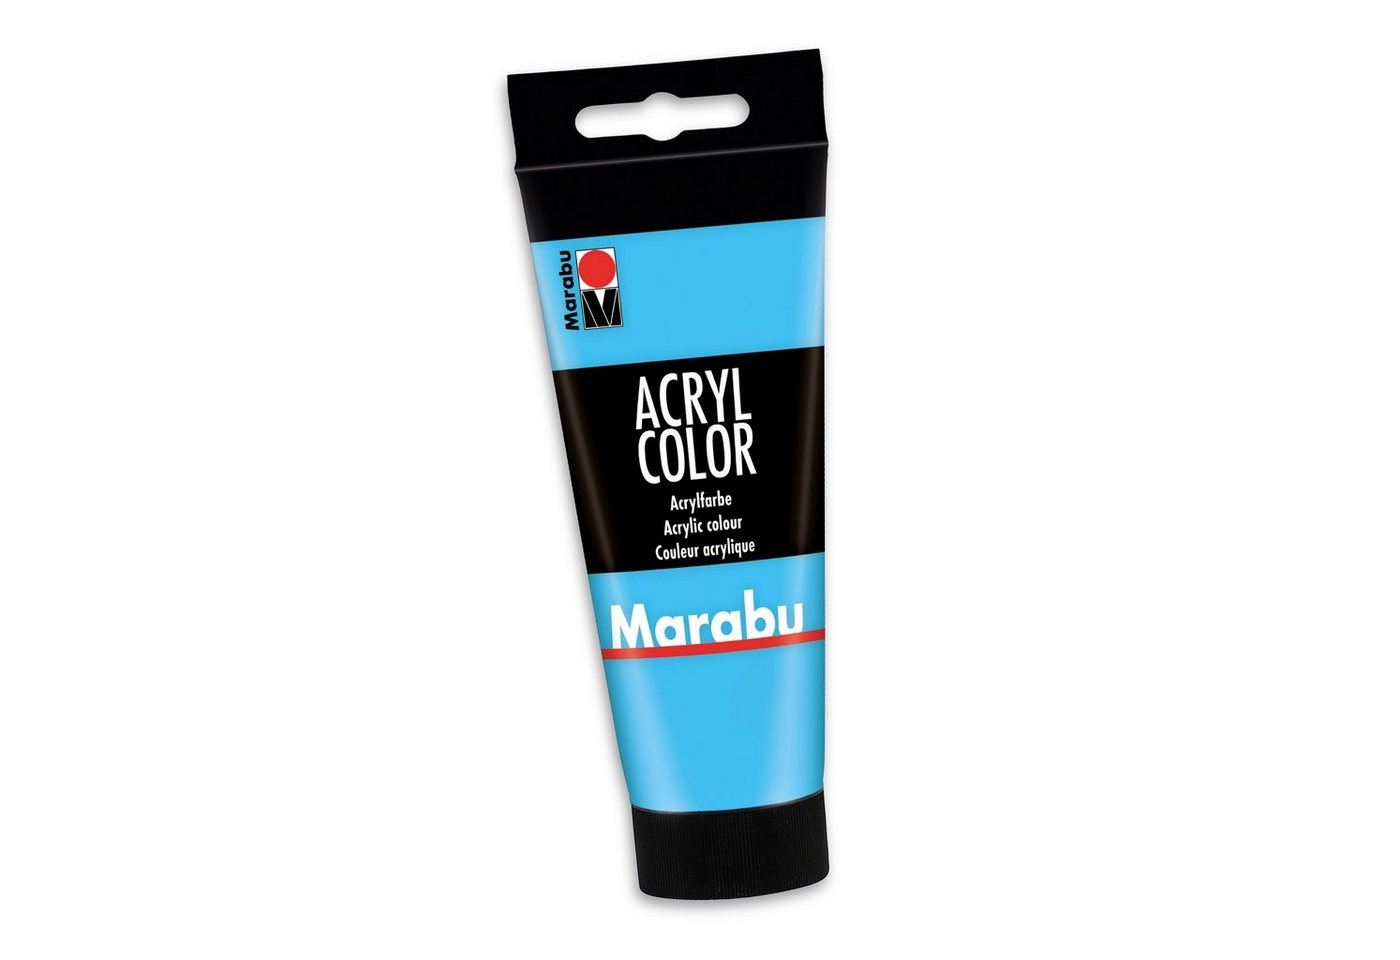 Marabu Acrylfarbe Marabu Acrylfarbe Acryl Color, 100 ml, hellblau 090 von Marabu